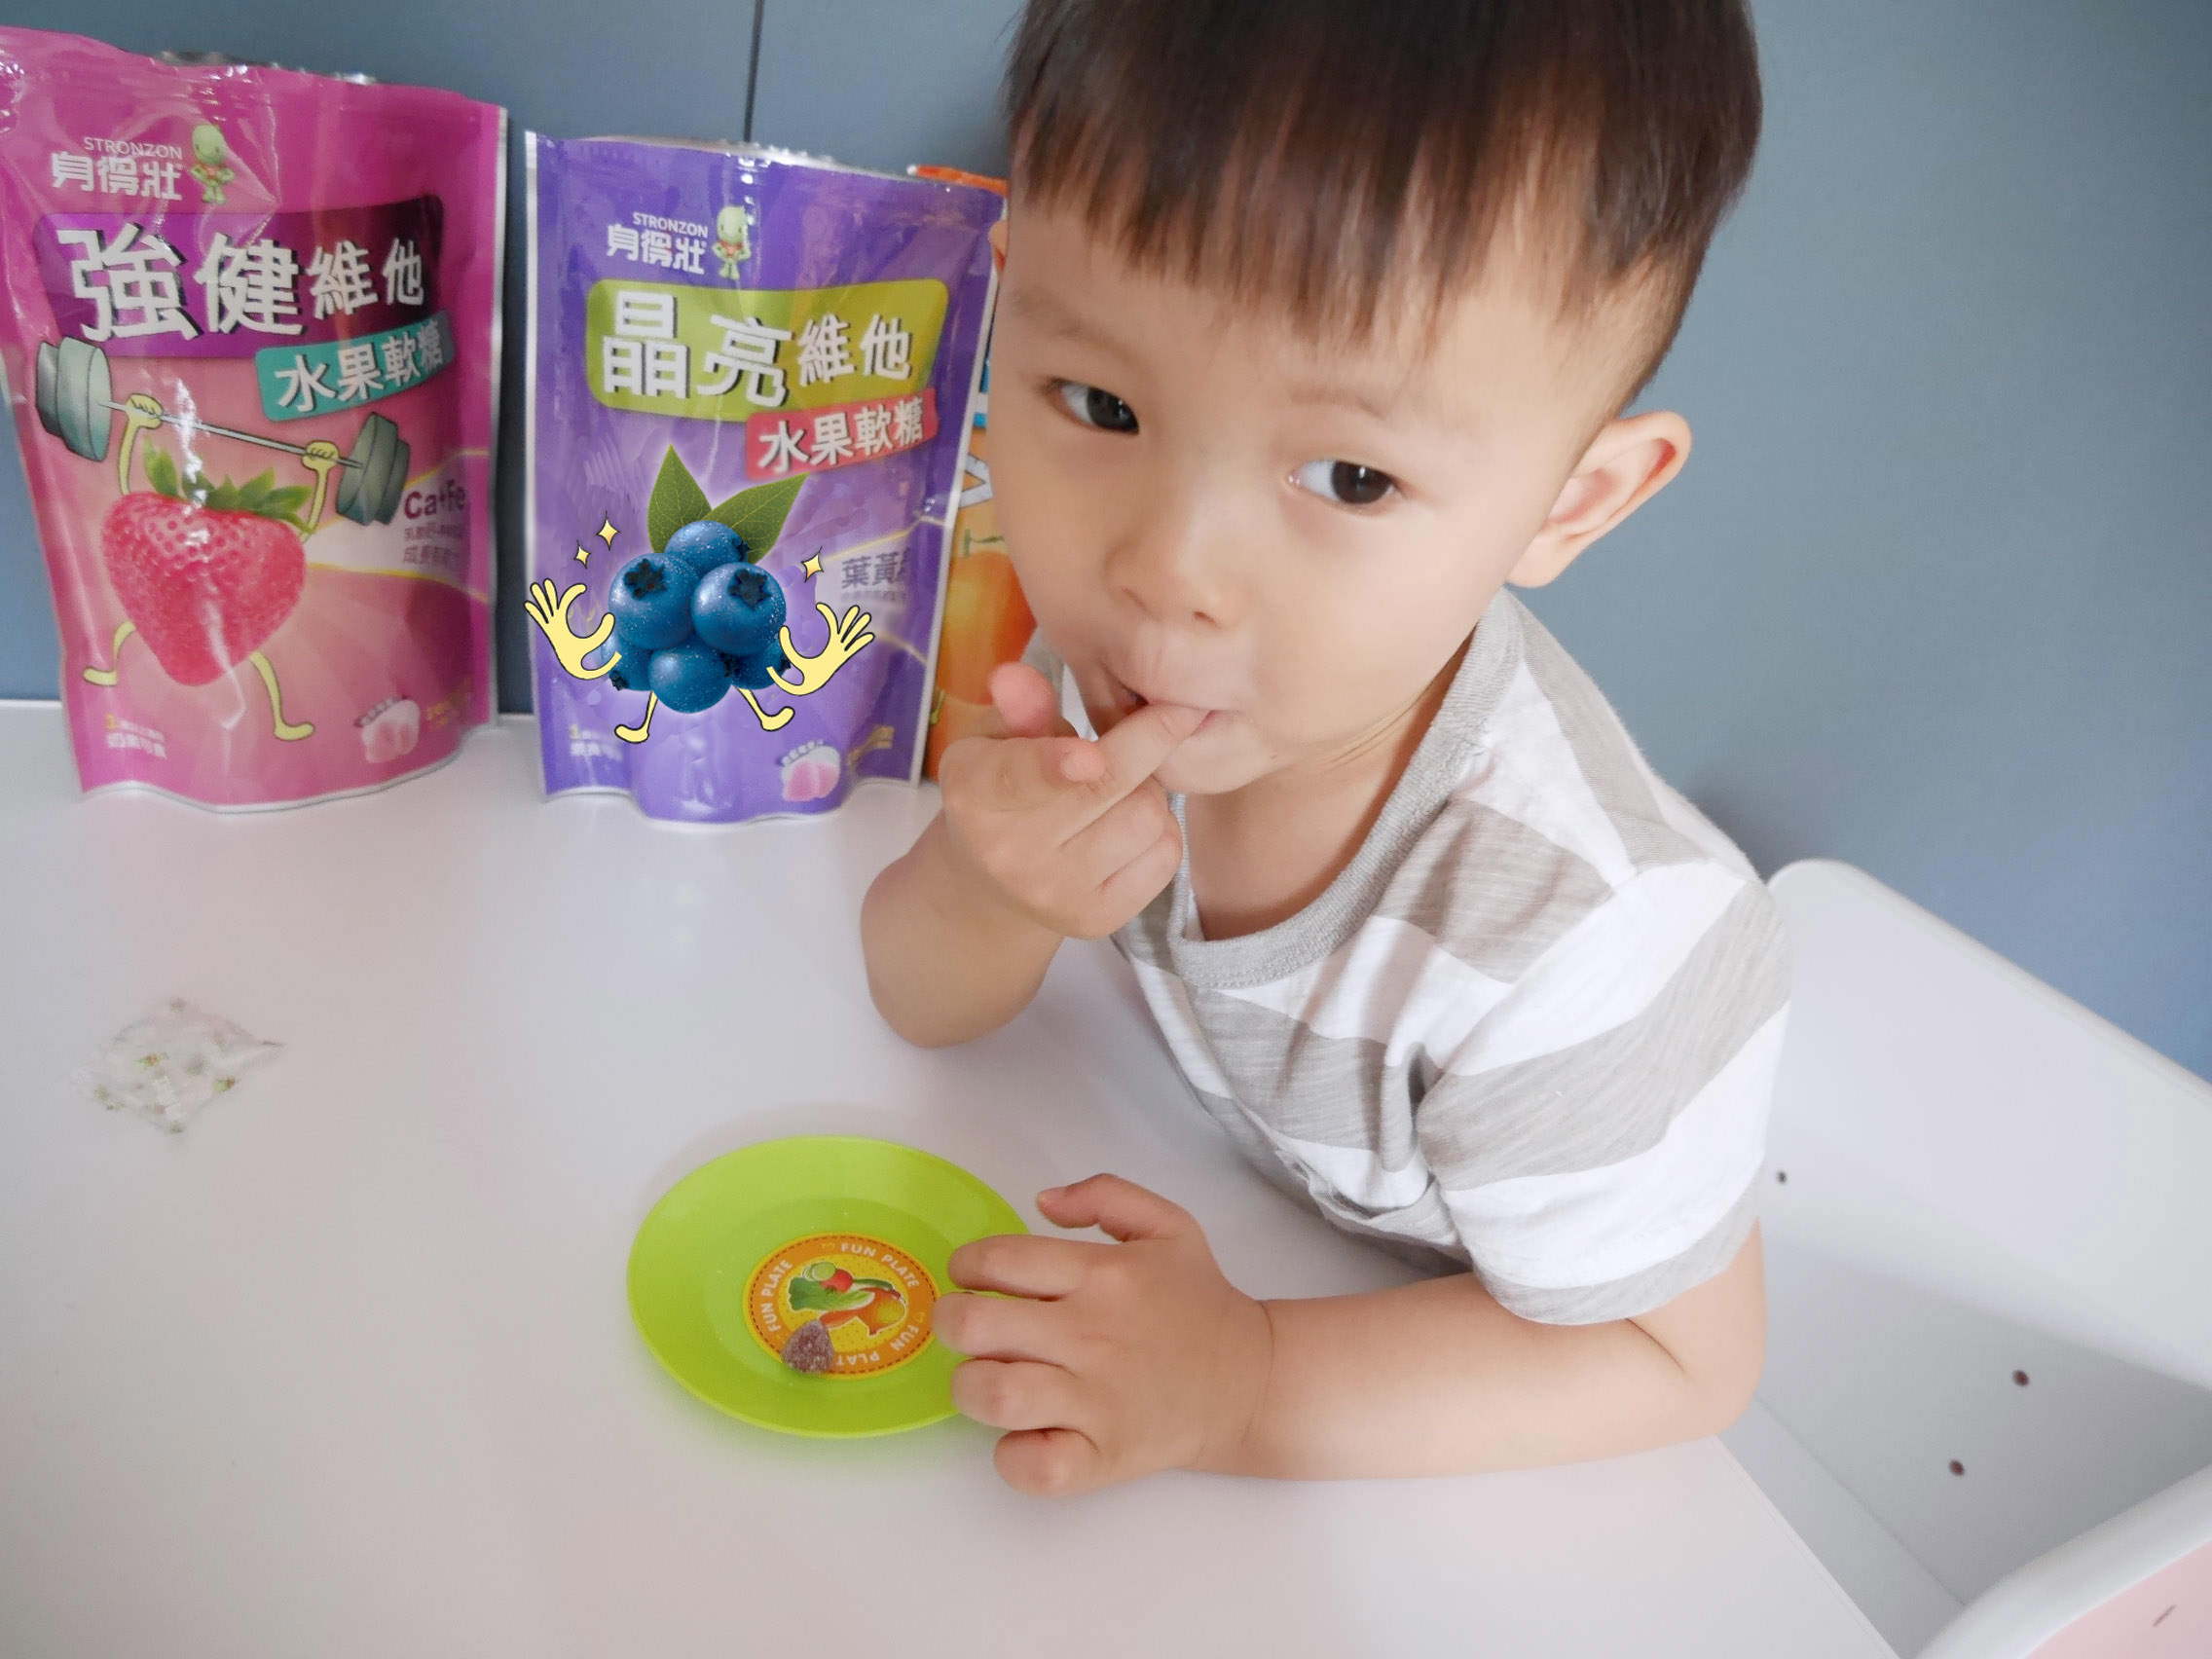 [副食品] 無人工香料/色素/防腐劑,讓一歲以上寶寶可以安心吃的身得壯維他水果軟糖